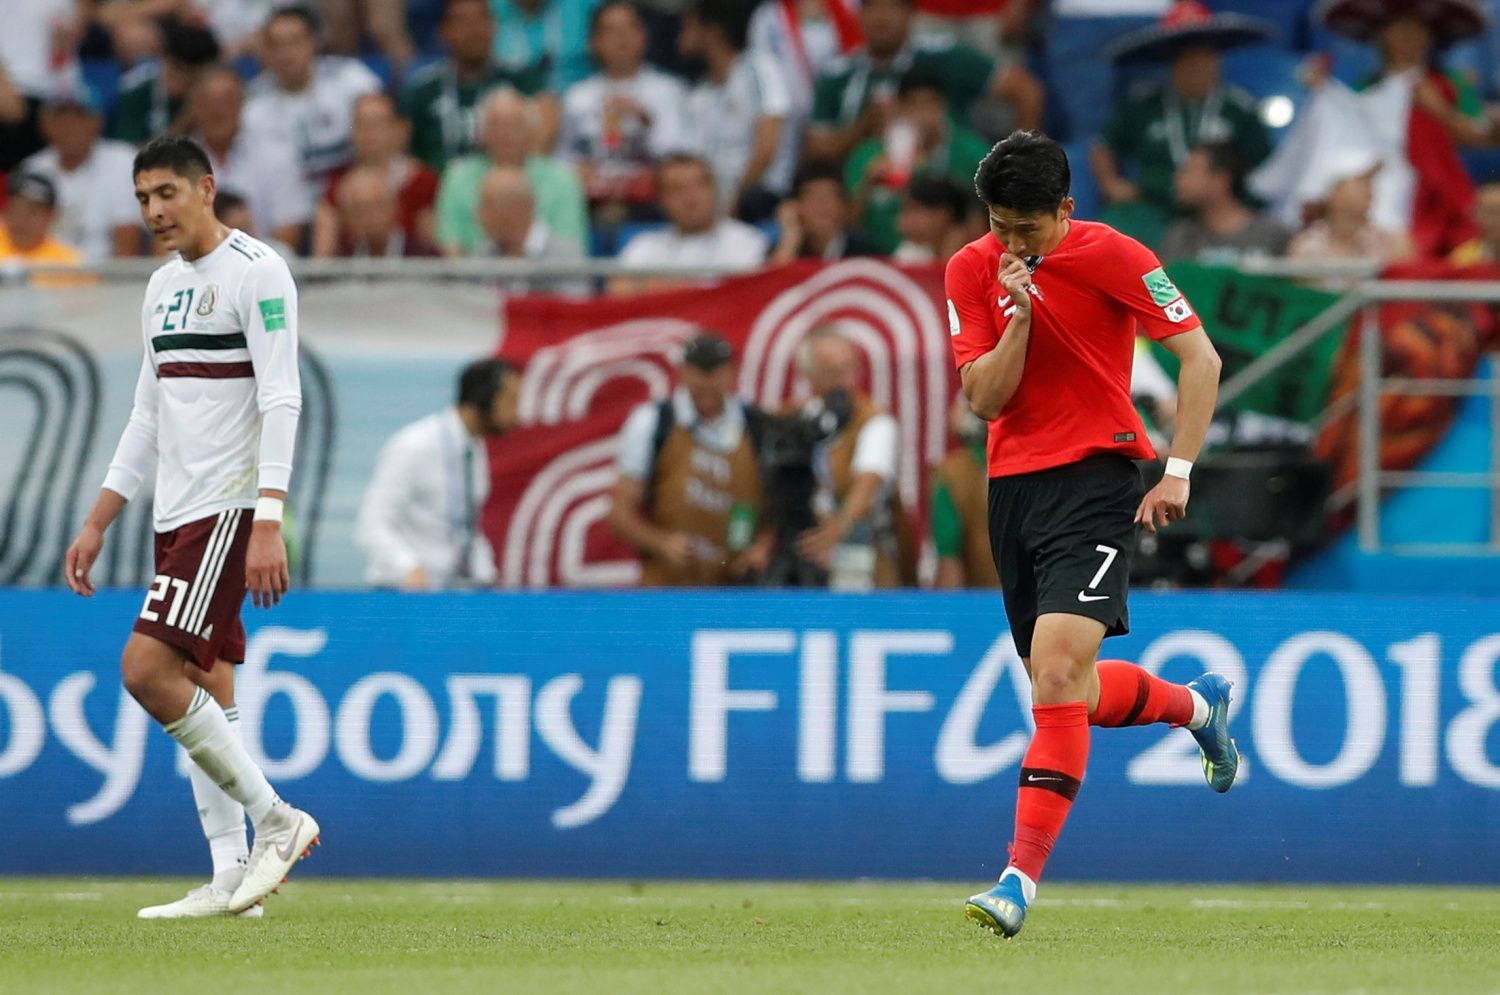 Zklamaný Son Hung-min v zápase Jižní Korea - Mexiko na MS 2018